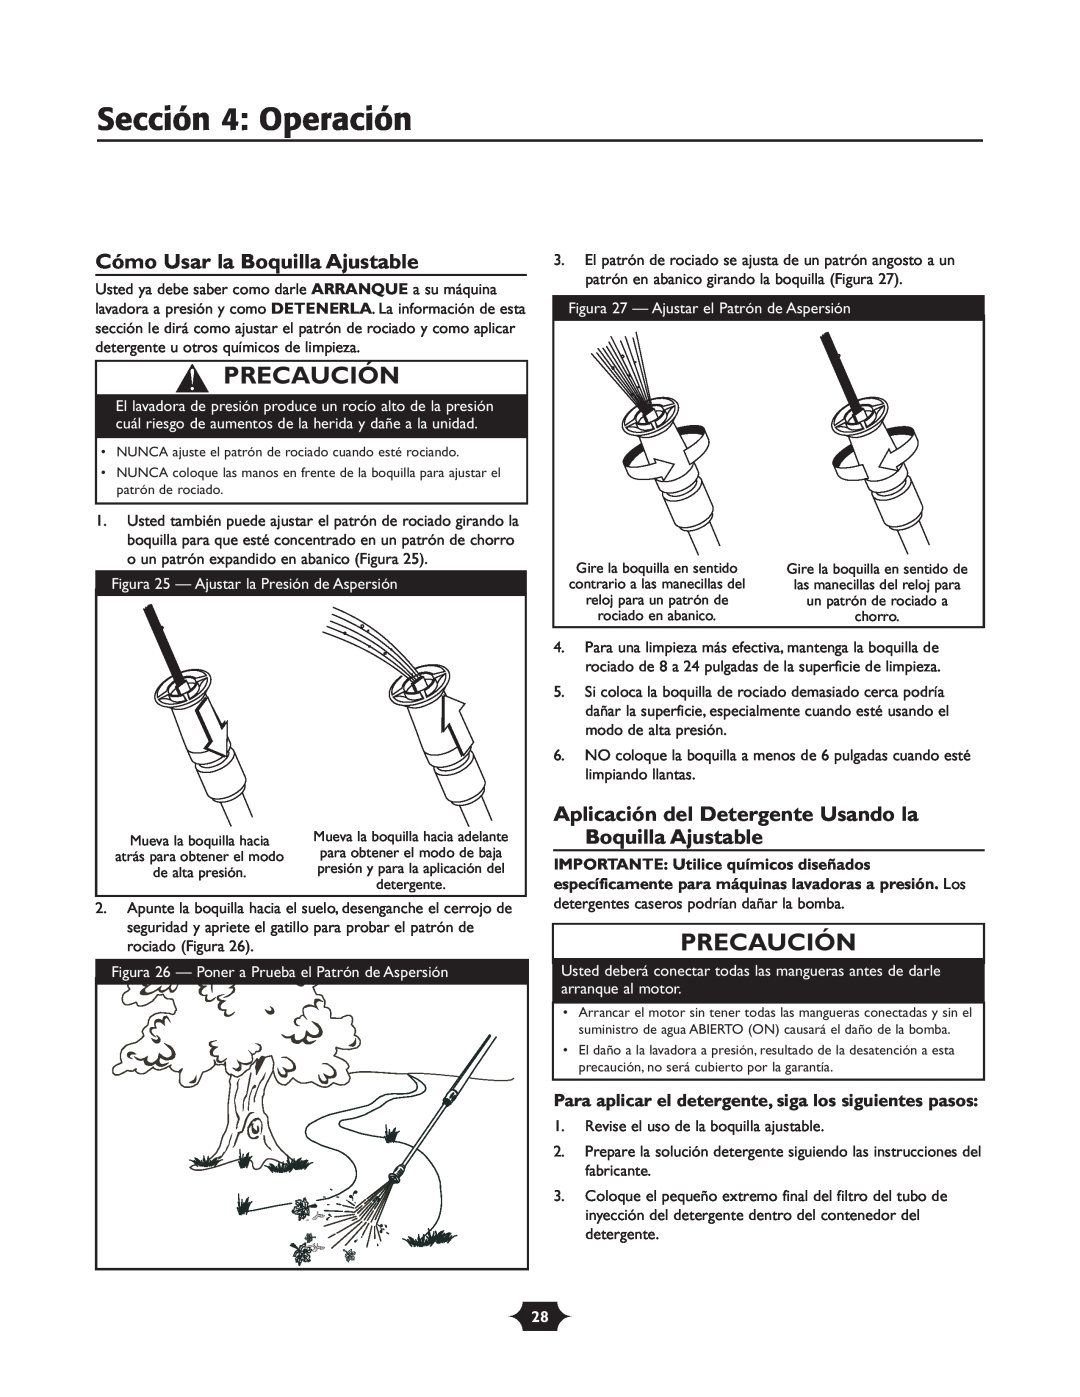 Troy-Bilt 20207 manual Sección 4 Operación, Cómo Usar la Boquilla Ajustable, Precaución 